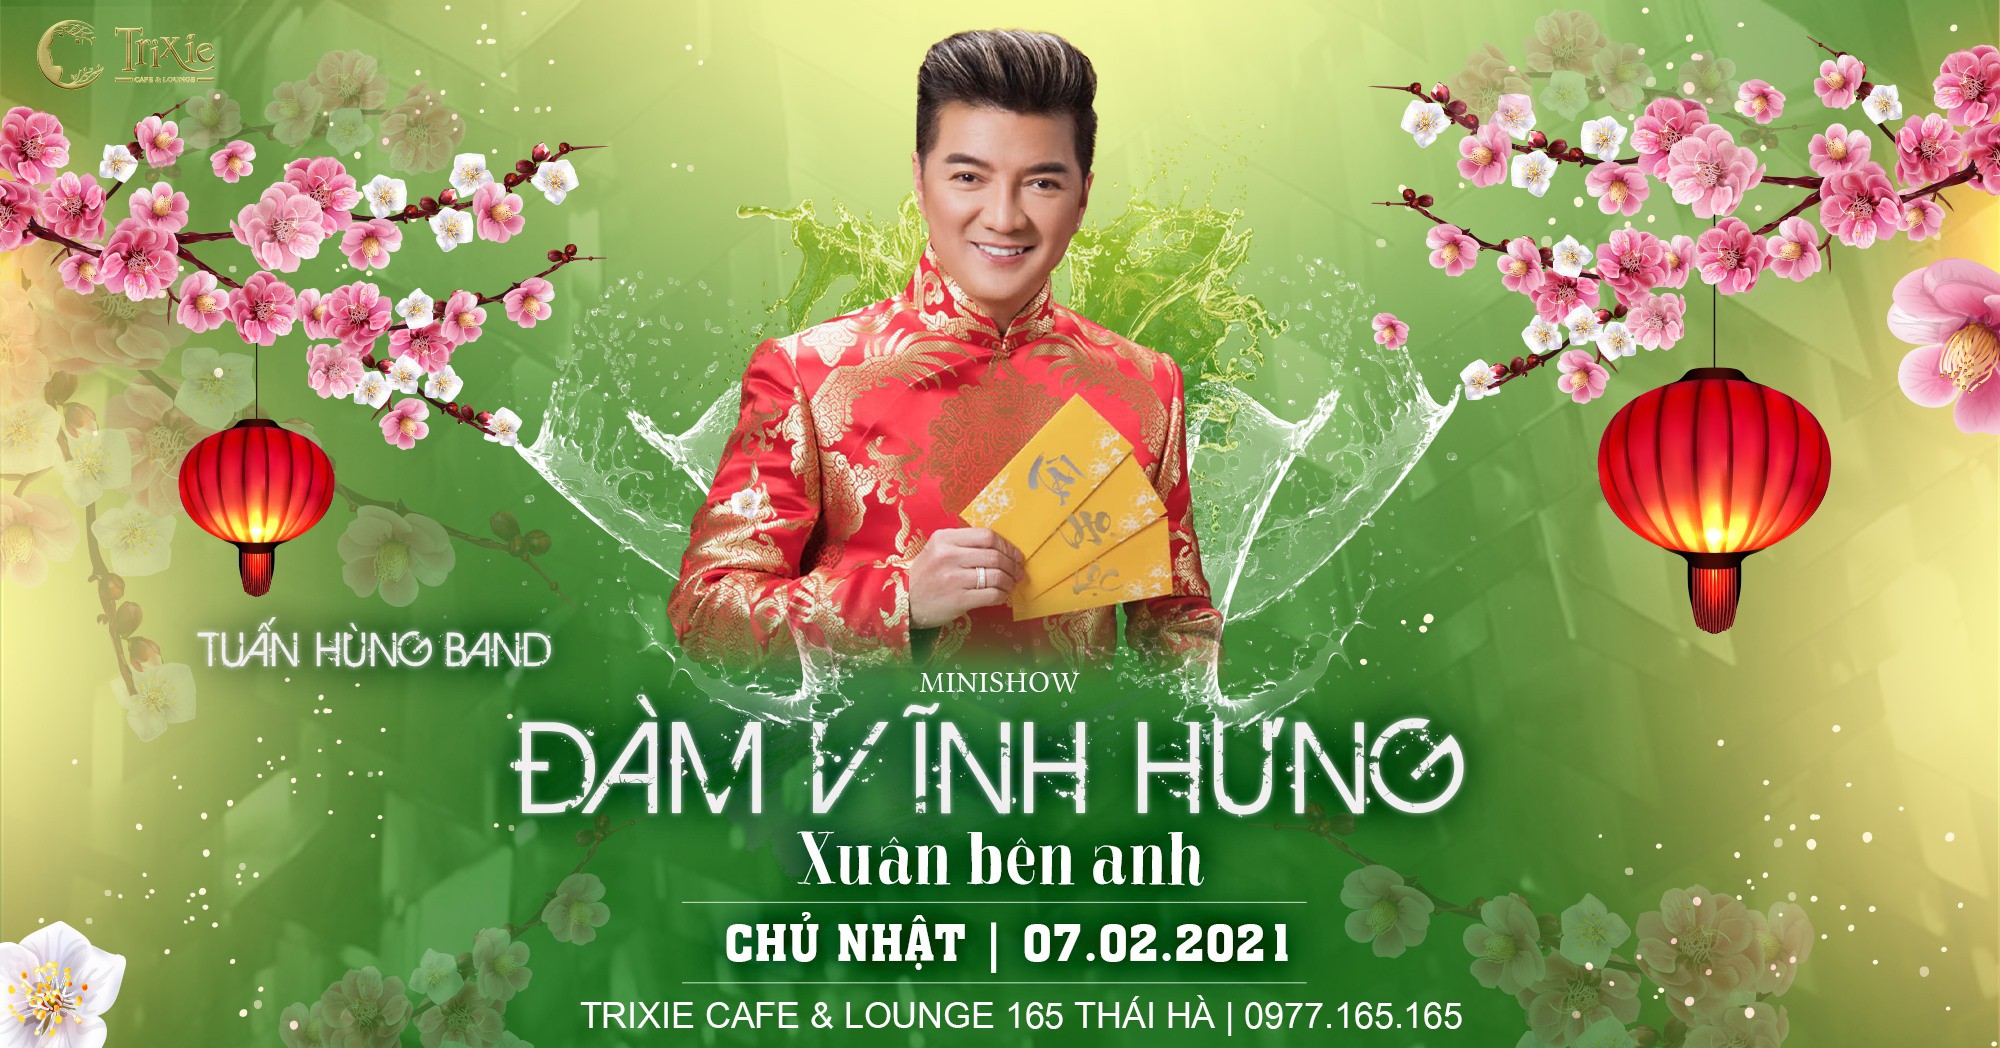 Minishow Đàm Vĩnh Hưng tại Hà Nội - Ngày 07.02.2021